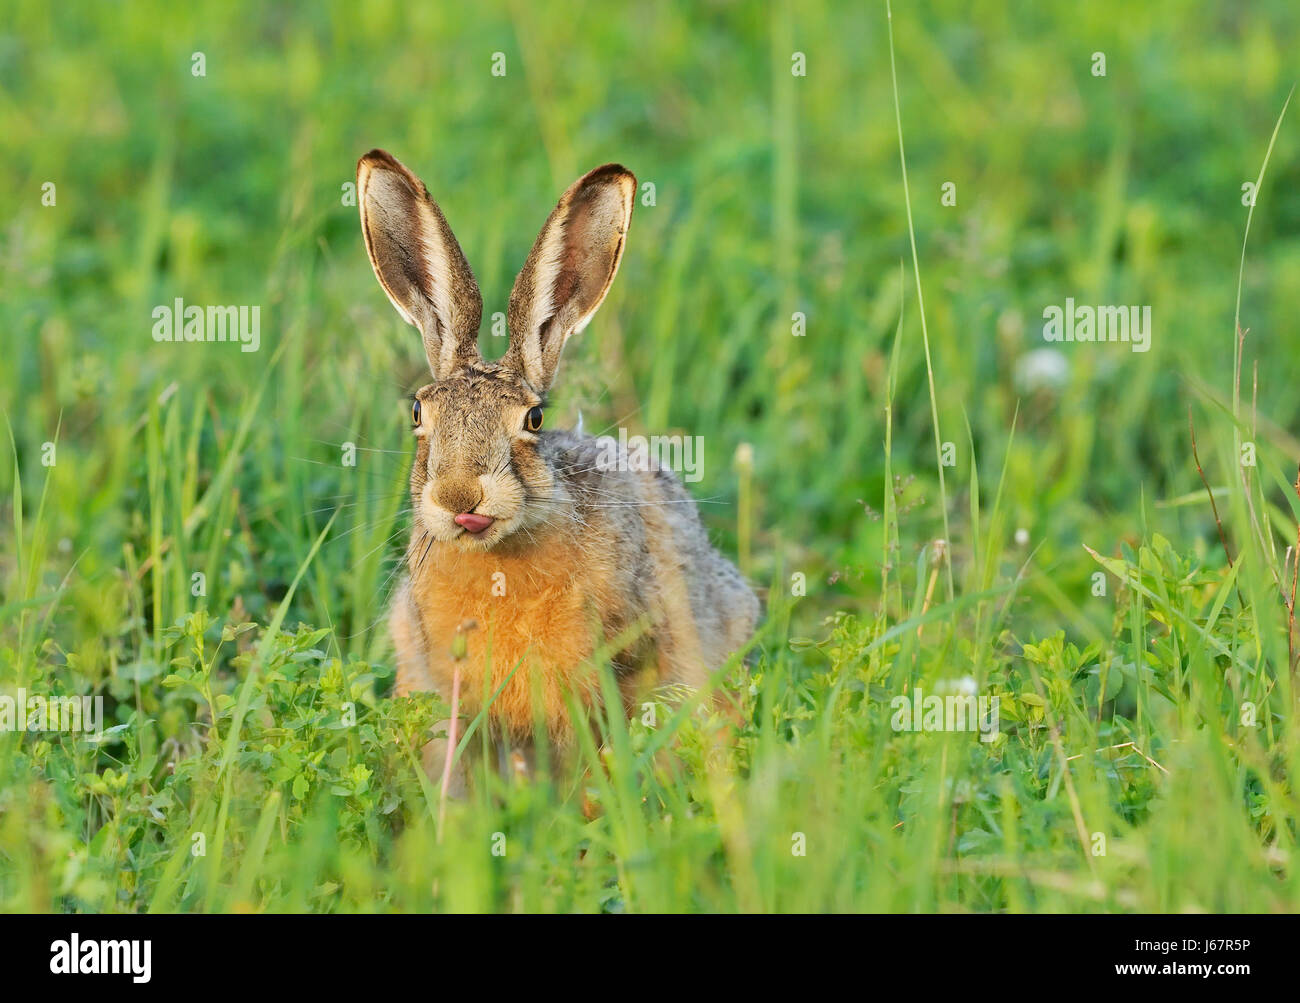 Occhio a linguetta organo baffo di lepre bunny cucchiaio orecchio animale mammifero verde e marrone Foto Stock